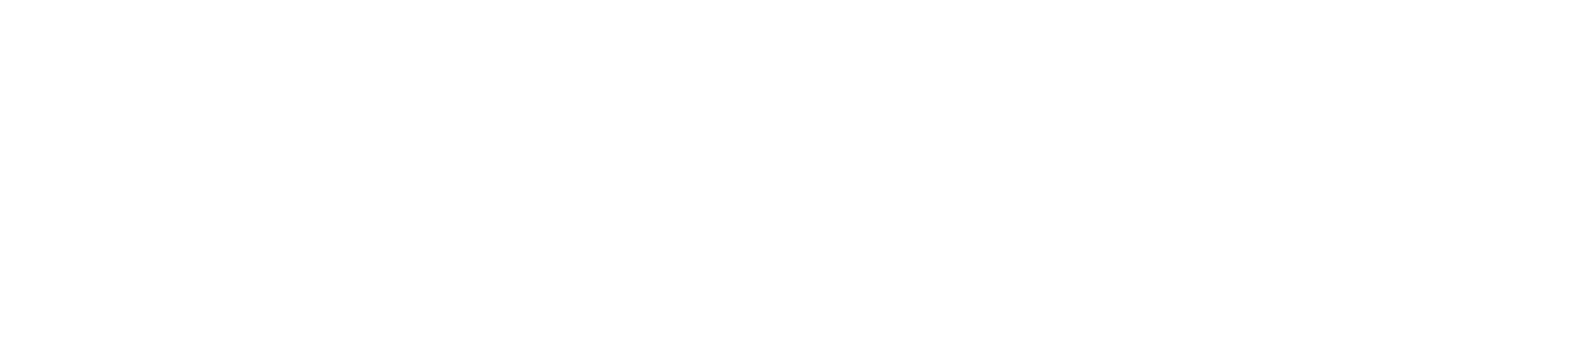 easyJet logo large for dark backgrounds (transparent PNG)